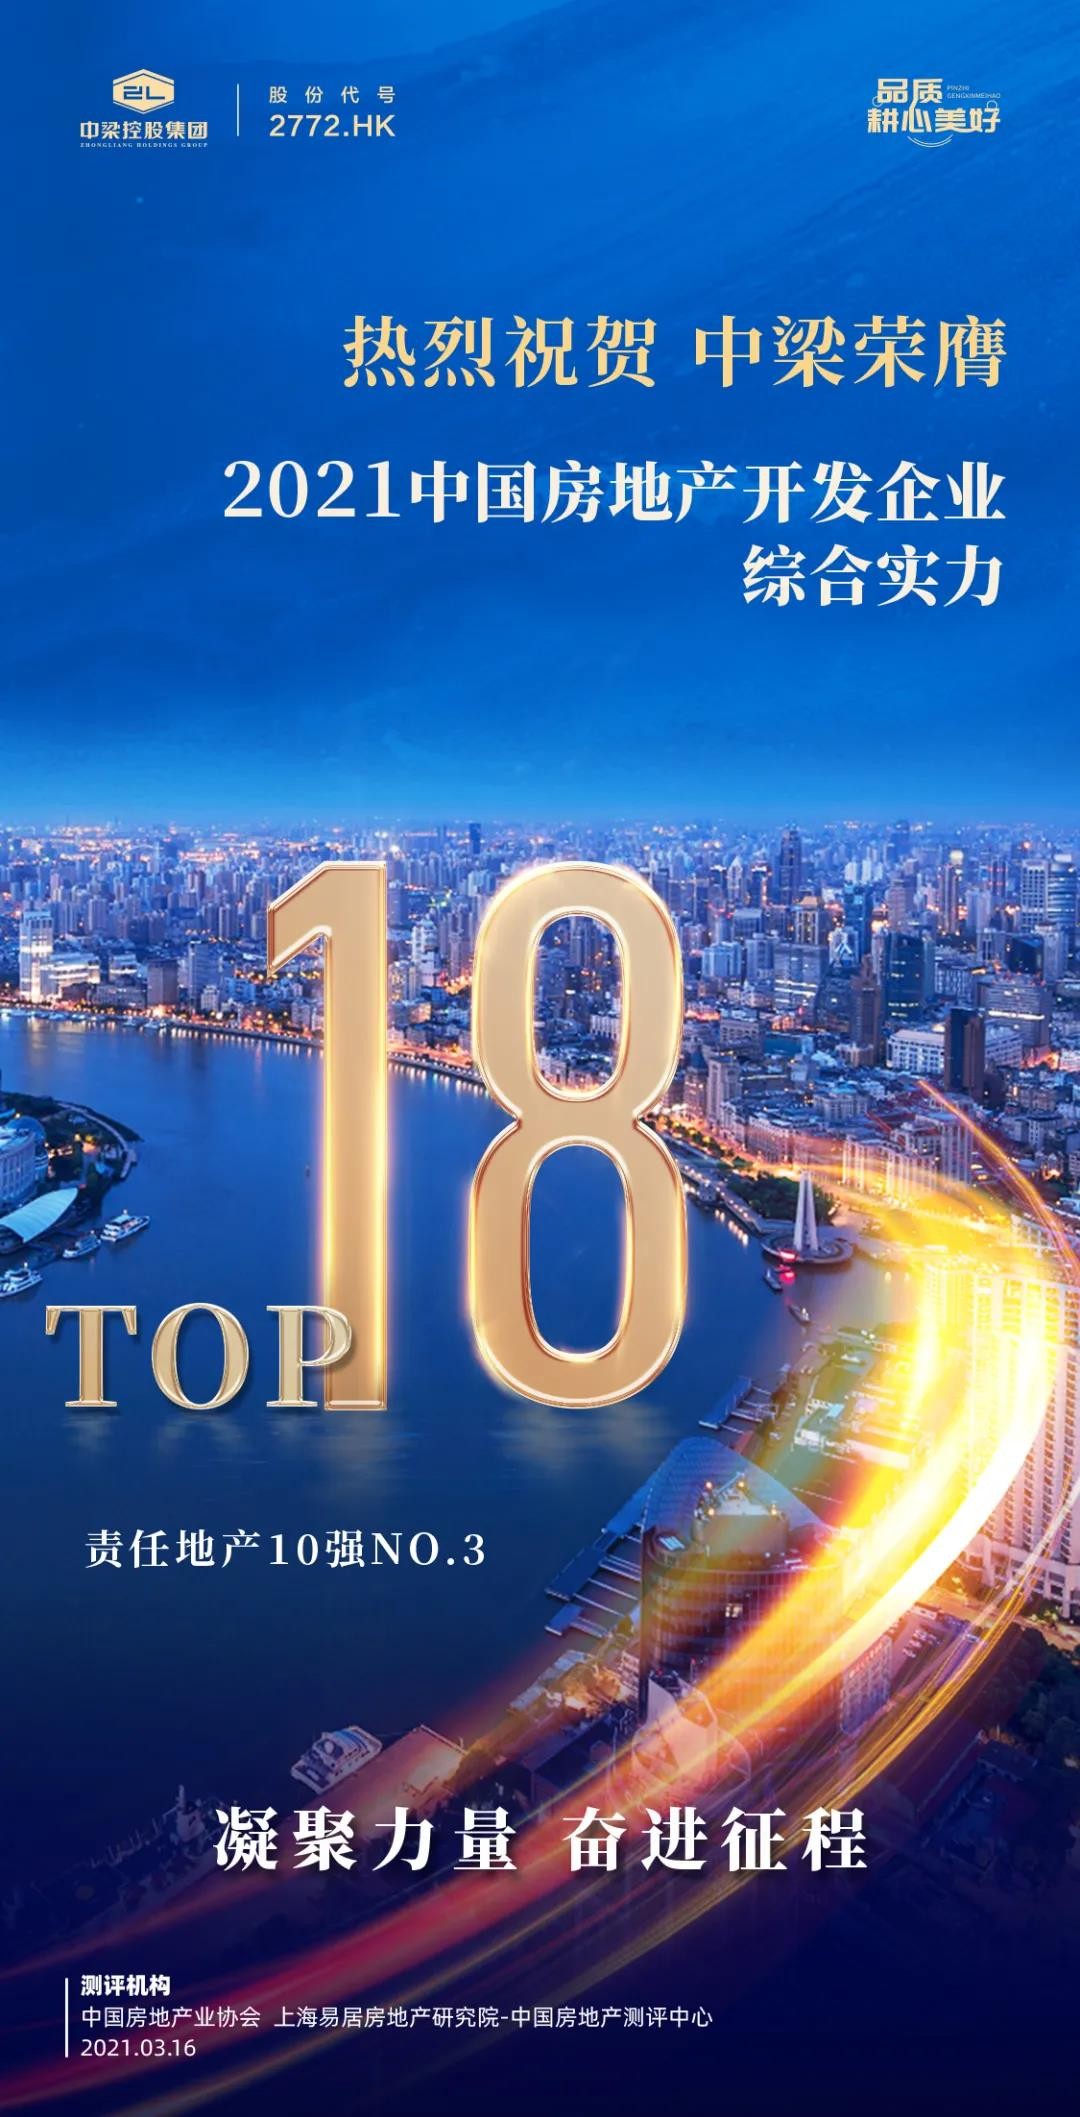 捷报频传！中梁荣膺2021中国房地产开发企业综合实力TOP18